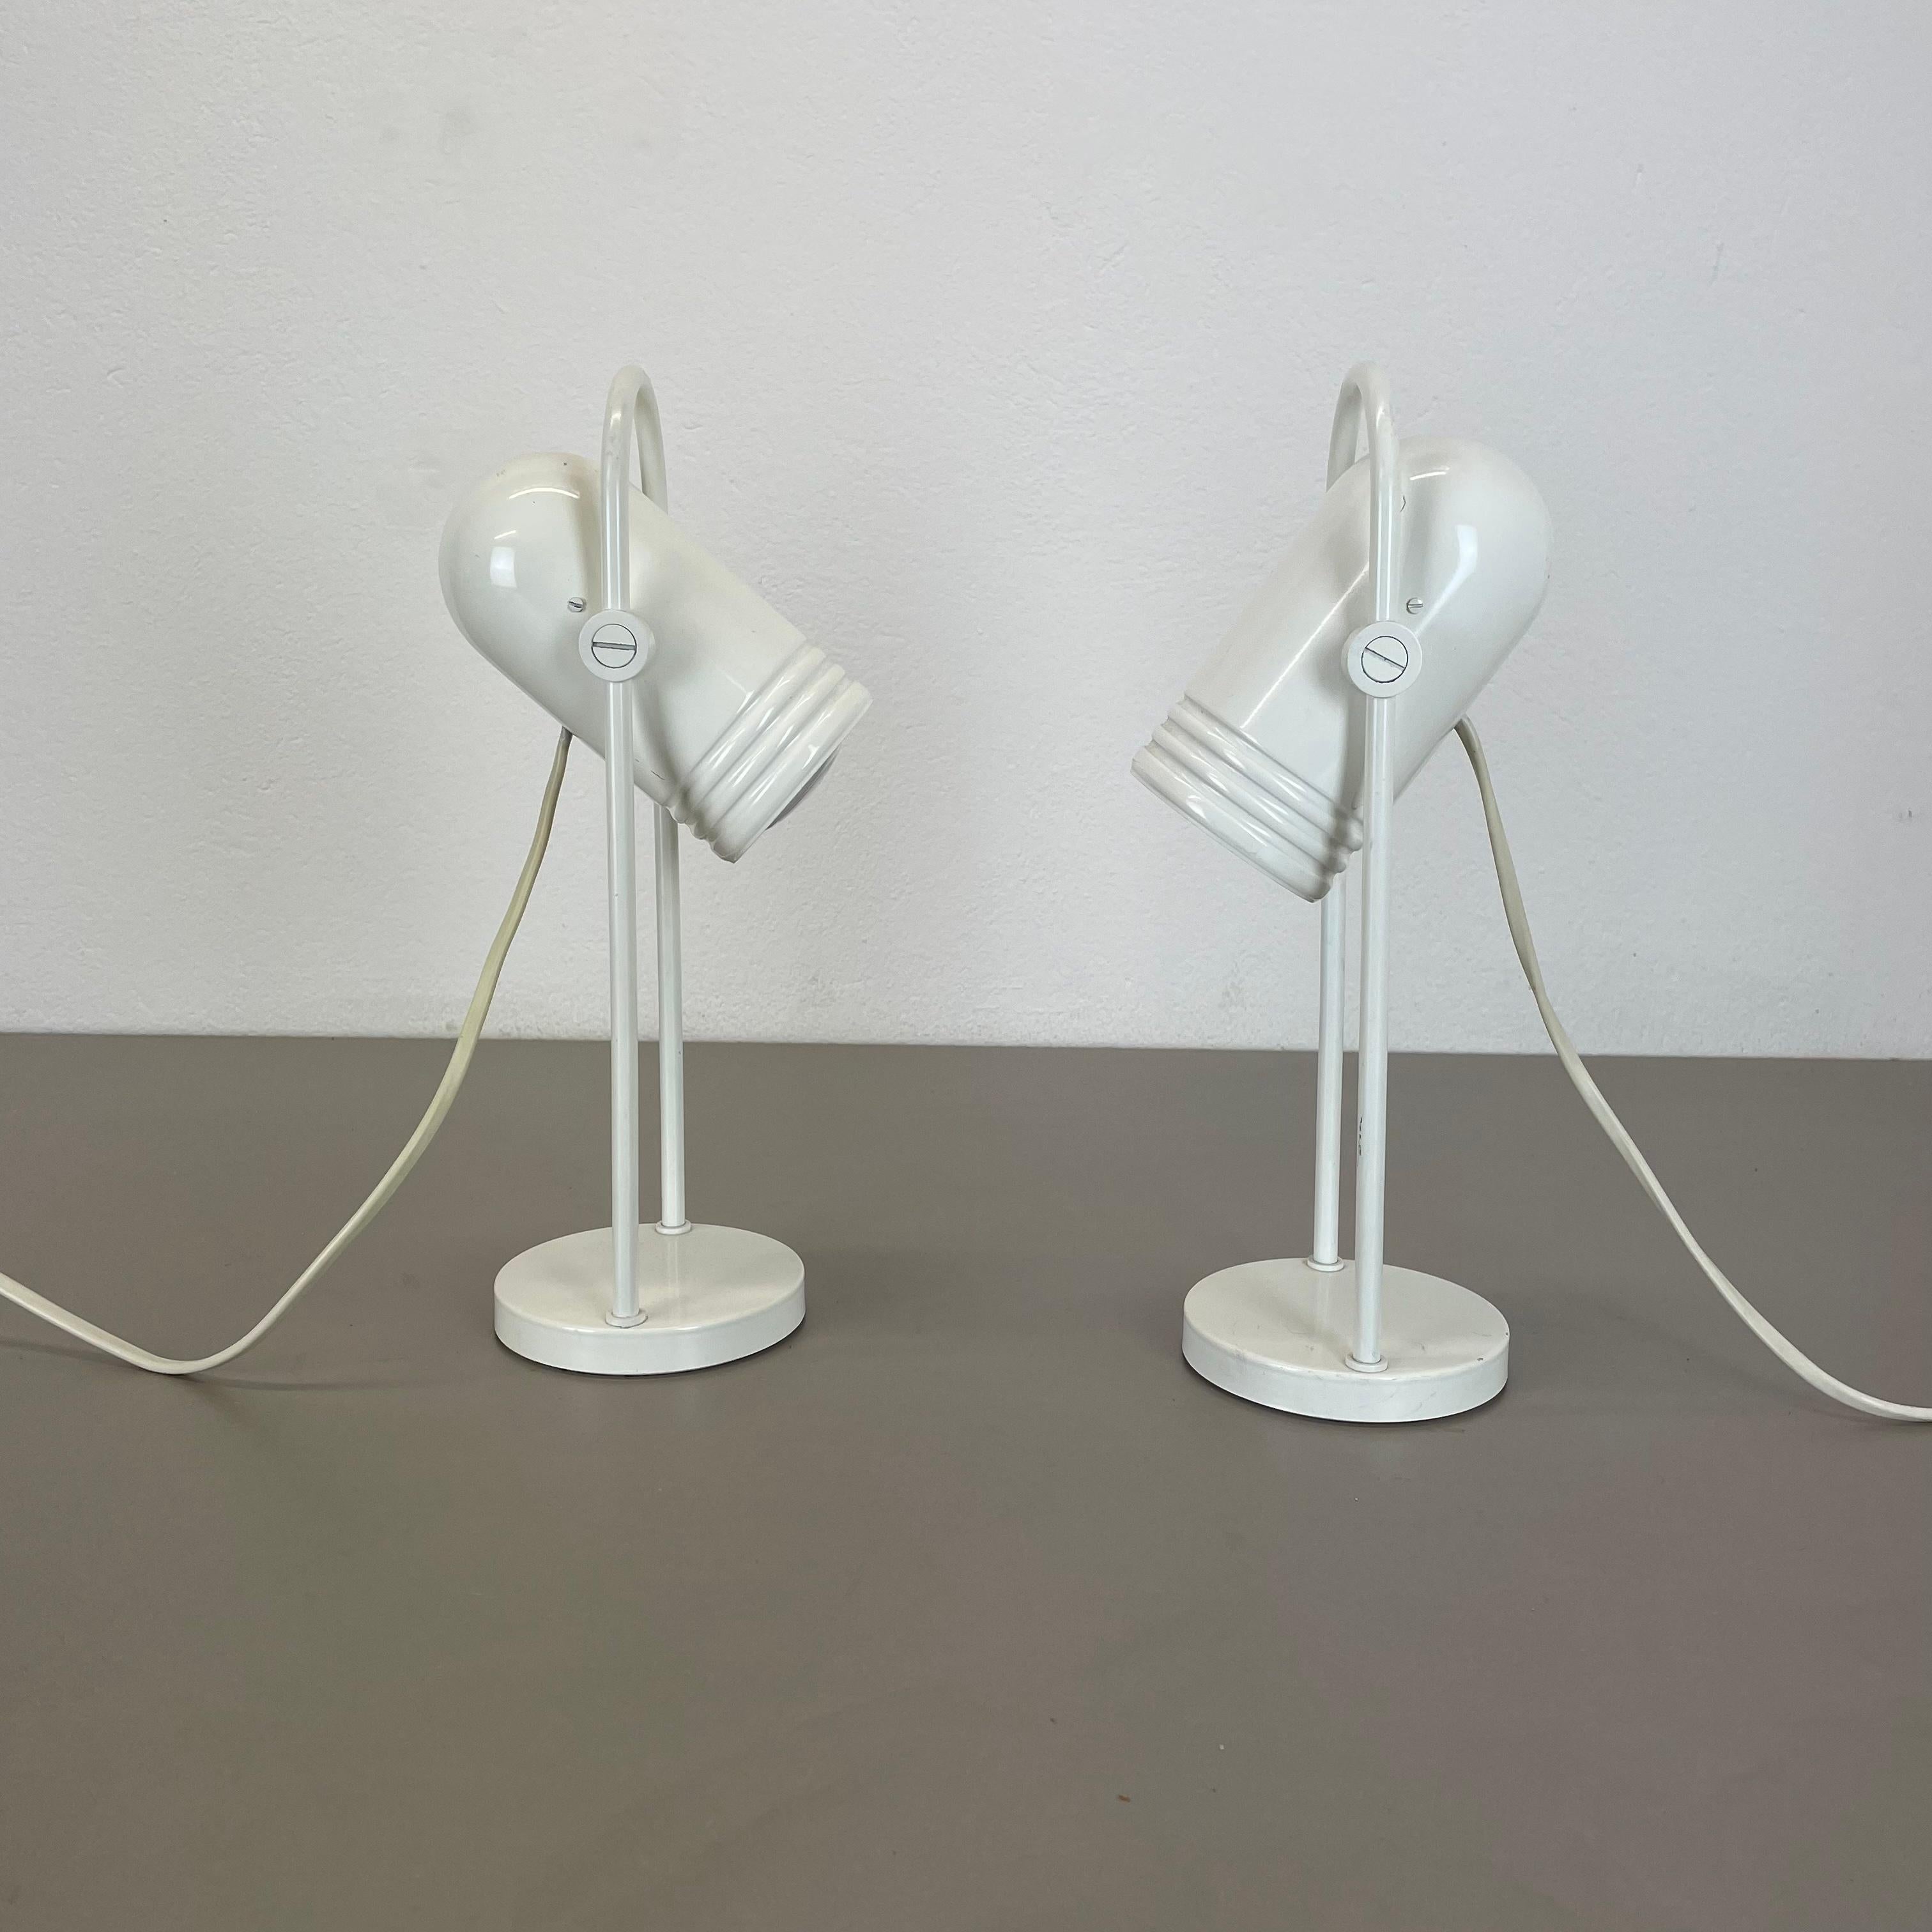 ARTICLE :

ensemble de 2 lampes de table


NO AGE :

1970s


DESCRIPTION :

ensemble de 2 lampes de table modernistes allemandes des années 70 en métal massif avec un abat-jour réglable sur le dessus. cette lampe a été conçue par Rolf